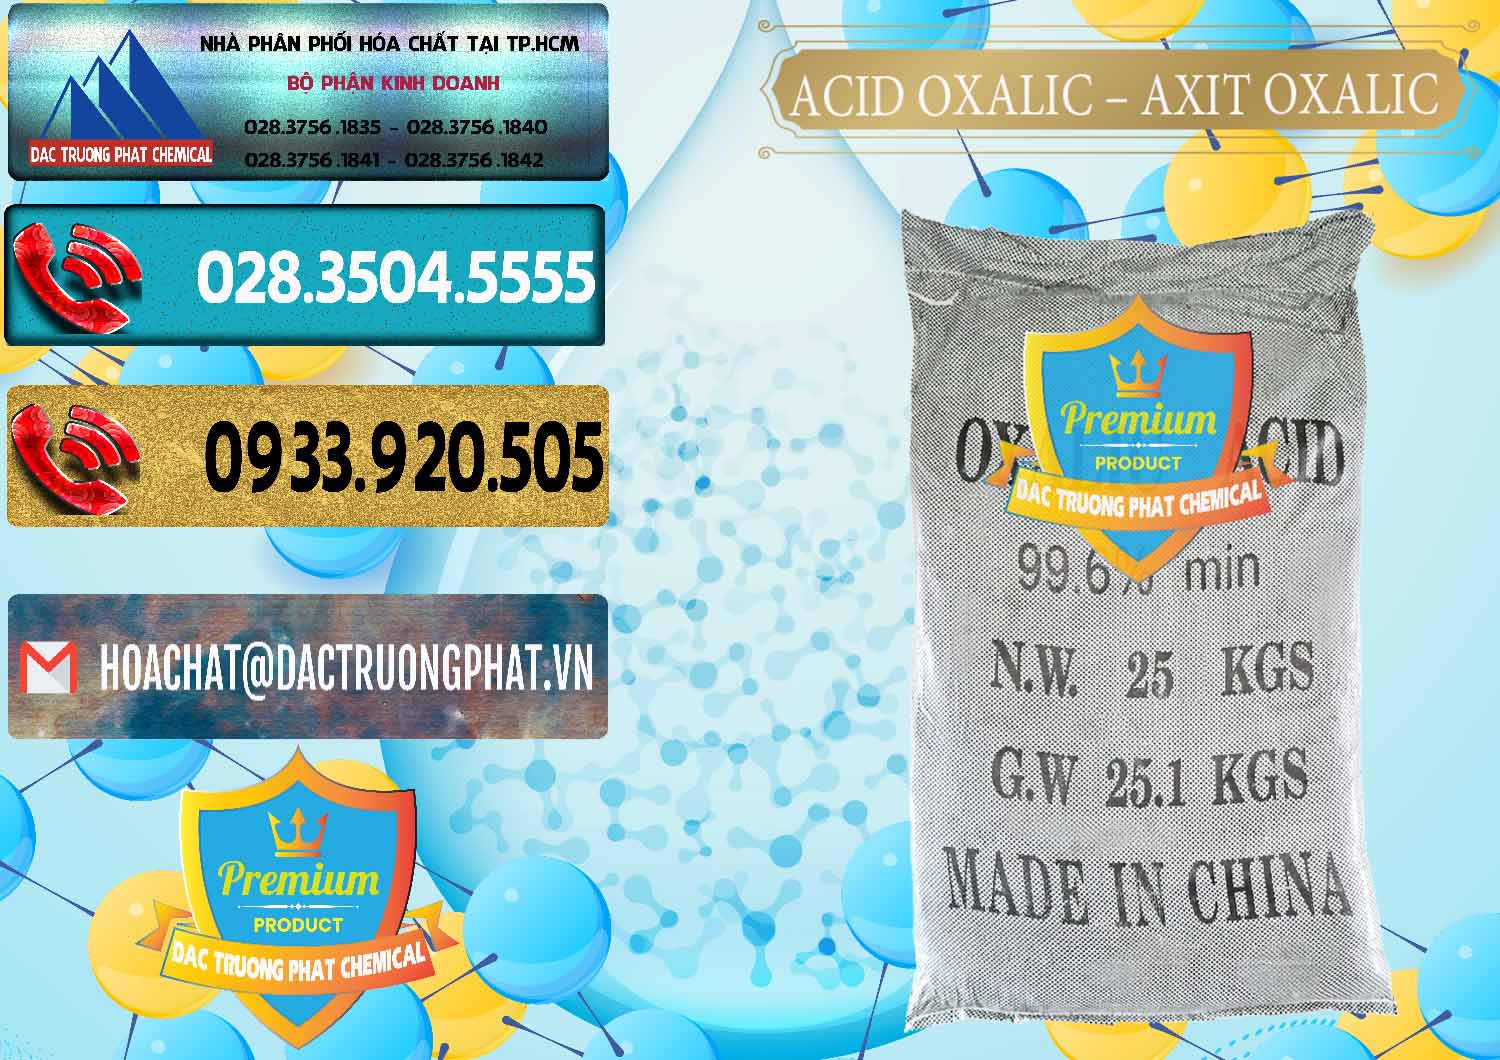 Đơn vị chuyên kinh doanh & bán Acid Oxalic – Axit Oxalic 99.6% Trung Quốc China - 0014 - Nơi phân phối và cung cấp hóa chất tại TP.HCM - hoachatdetnhuom.com